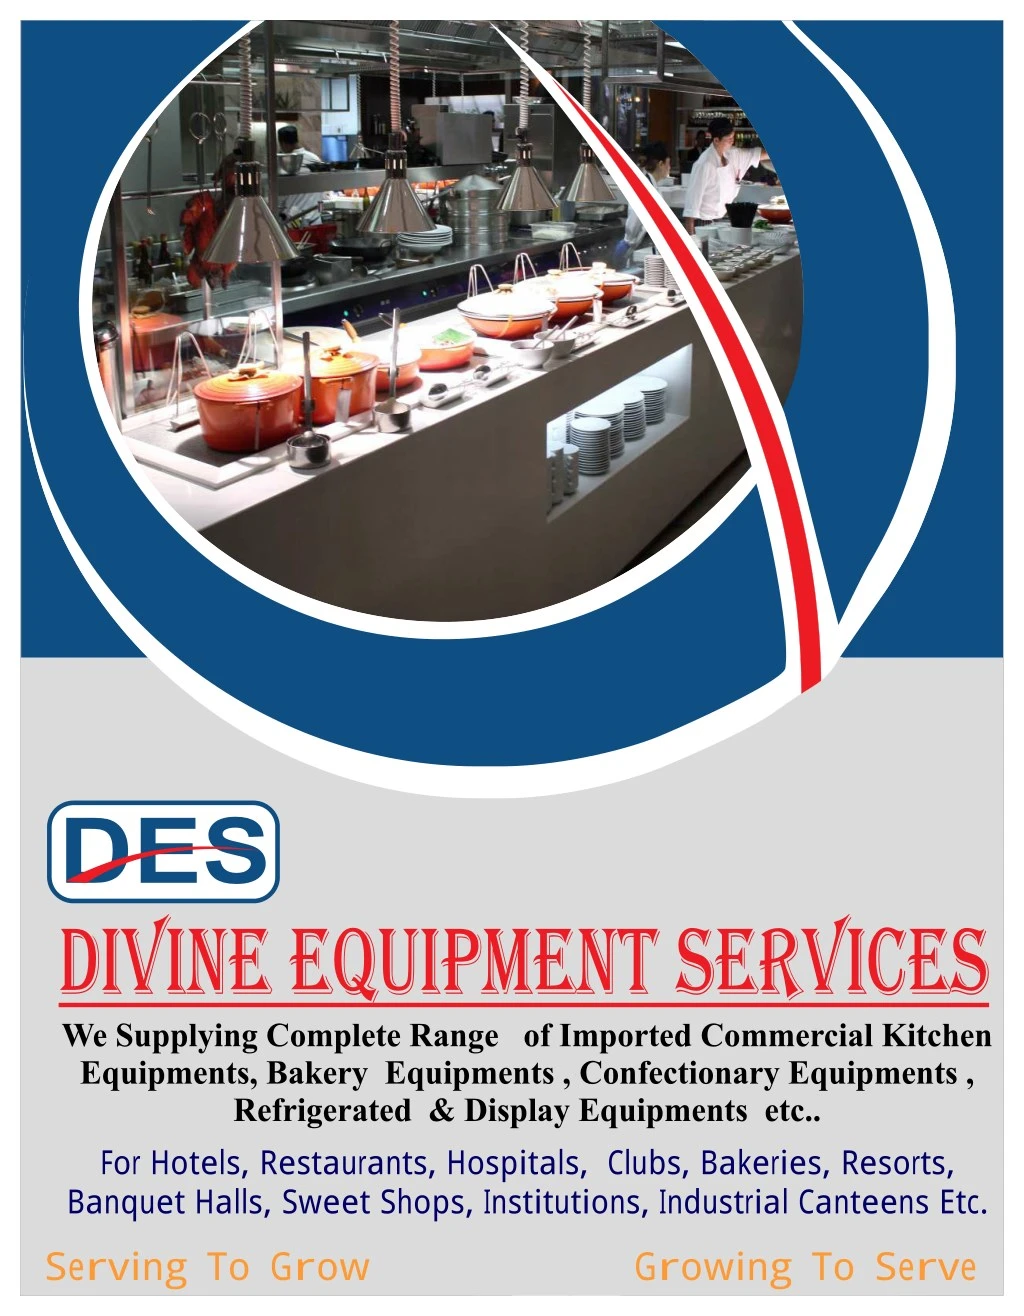 des divine equipment services